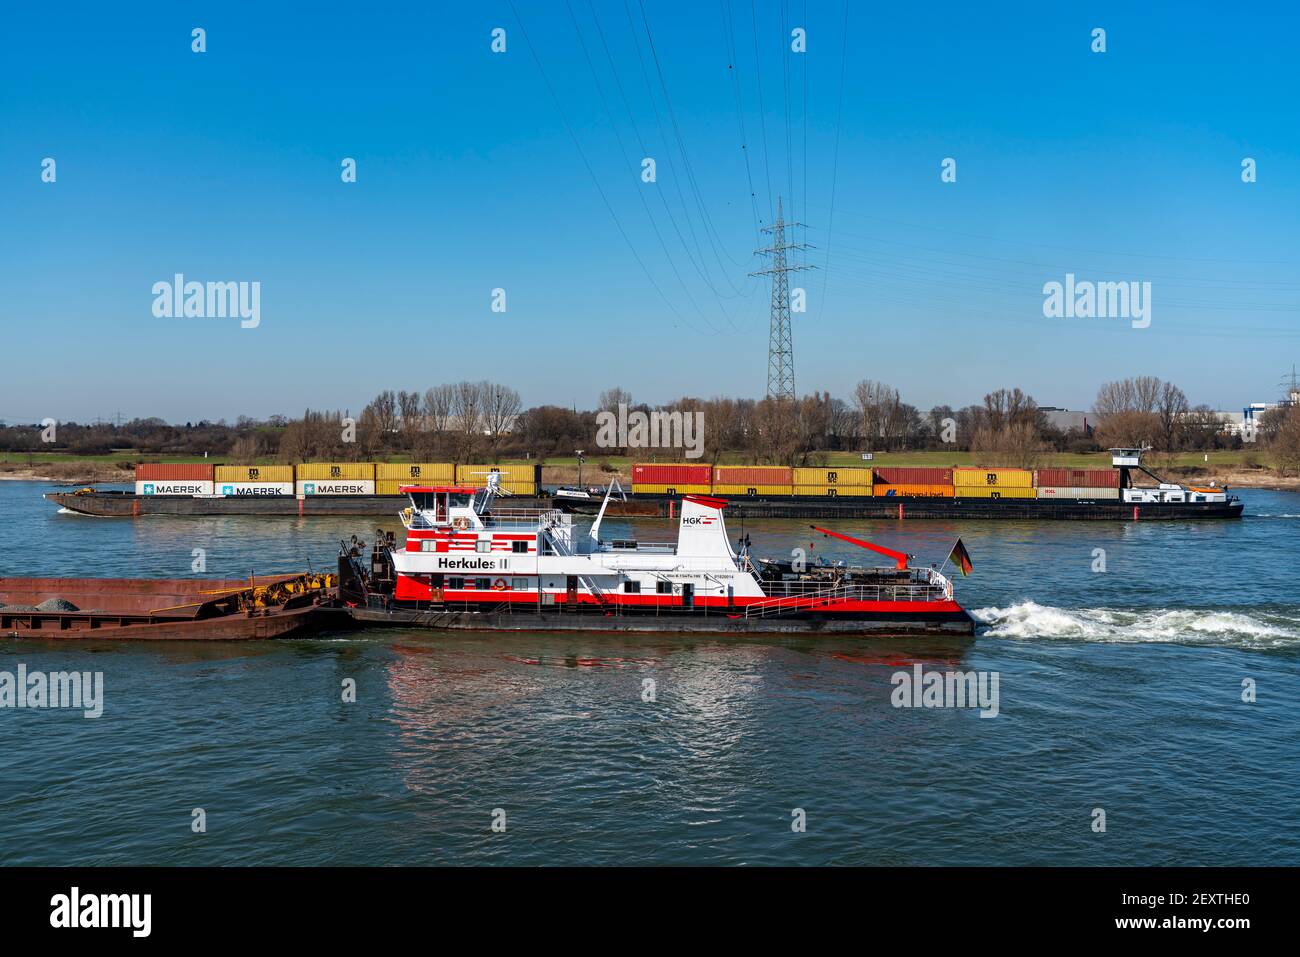 Navires de cargaison sur le Rhin près de Duisburg, pousser le bateau Herkules II, pousser le bateau, apporte le charbon et d'autres matériaux dans les barges de poussée, de Rotterdam à l'opérat Banque D'Images